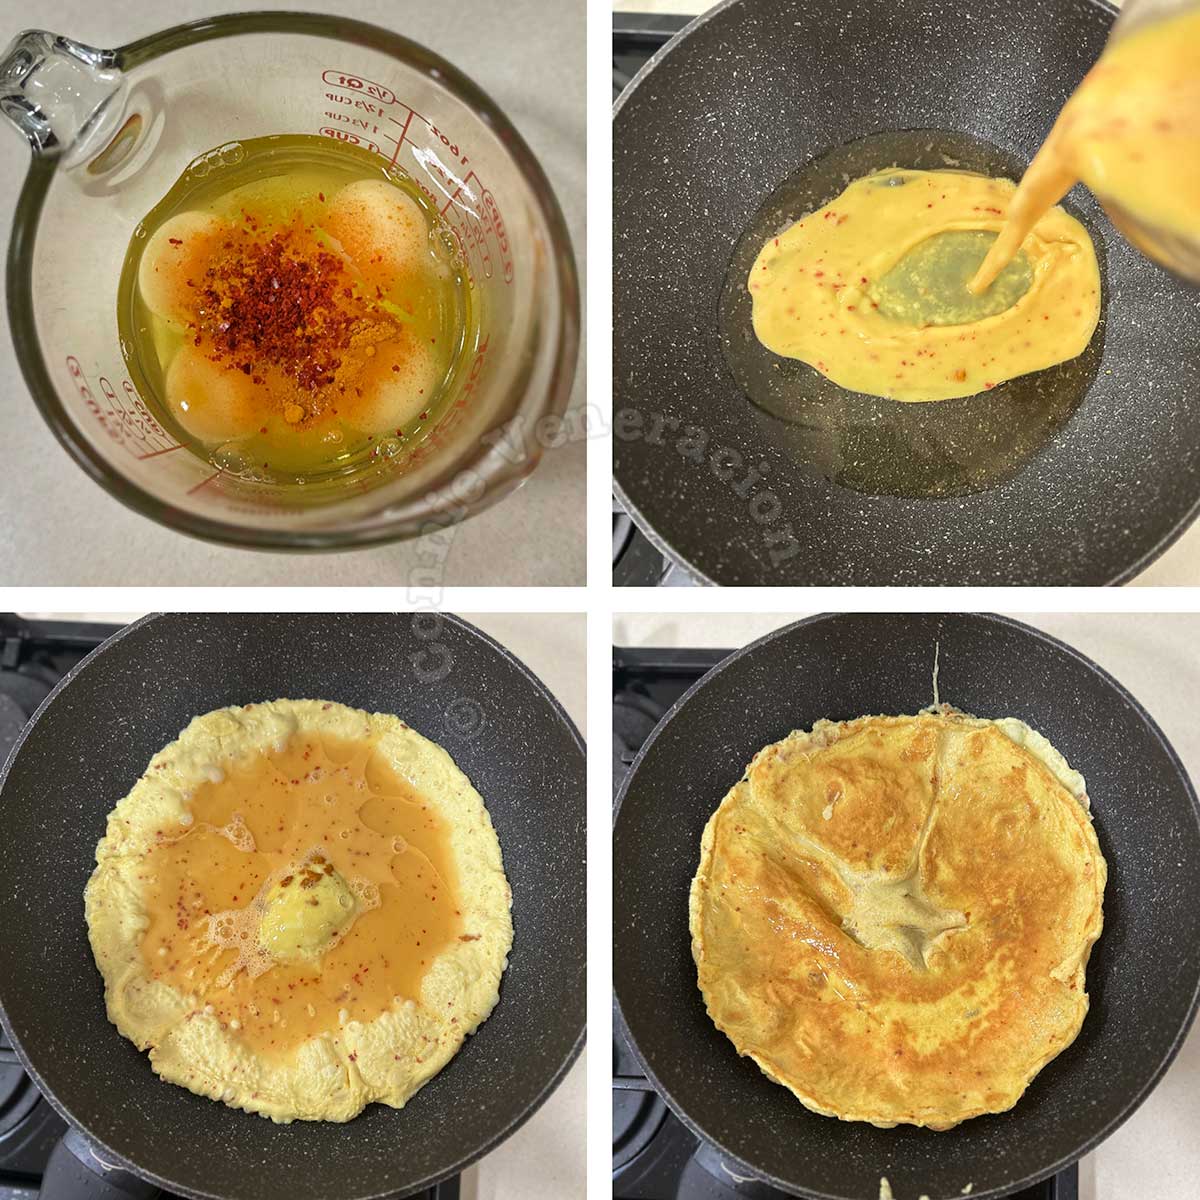 Making a fluffy omelette